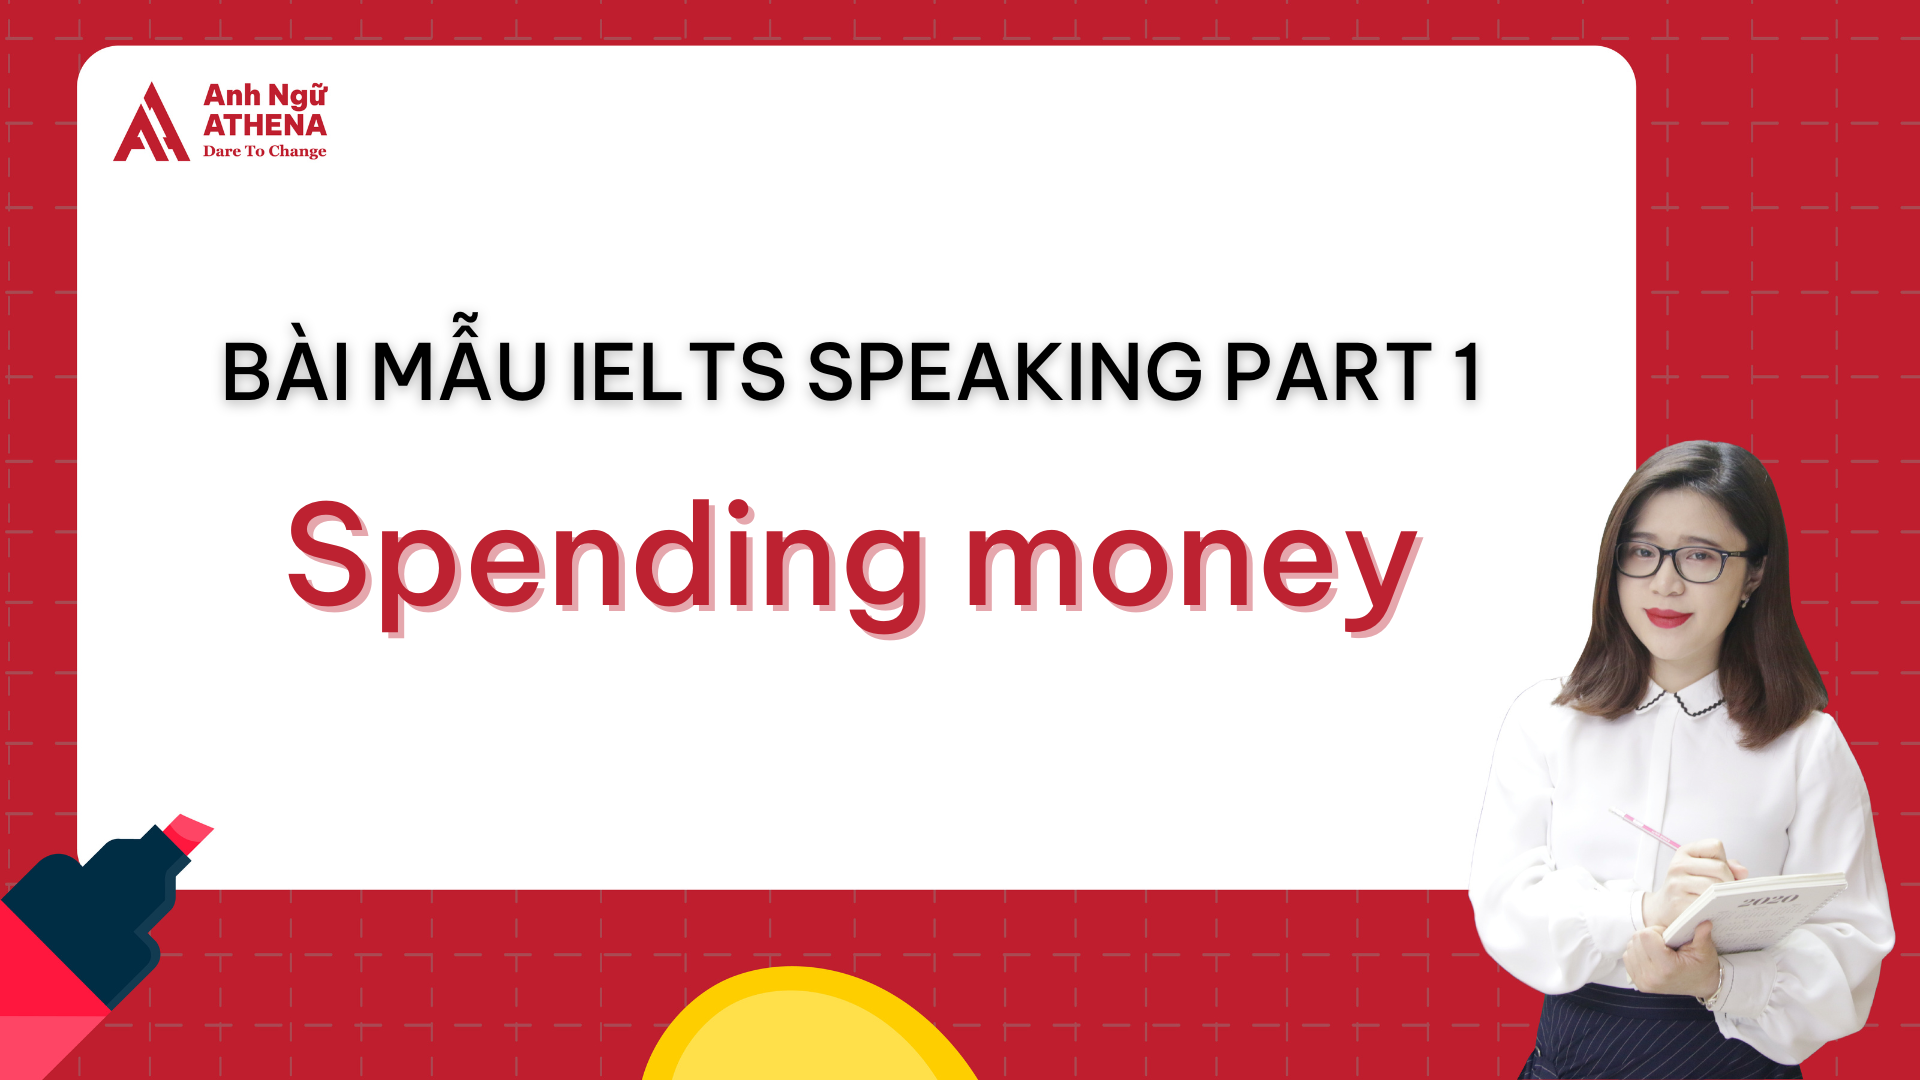 Bài mẫu IELTS Speaking Part 1 - Topic: Spending money